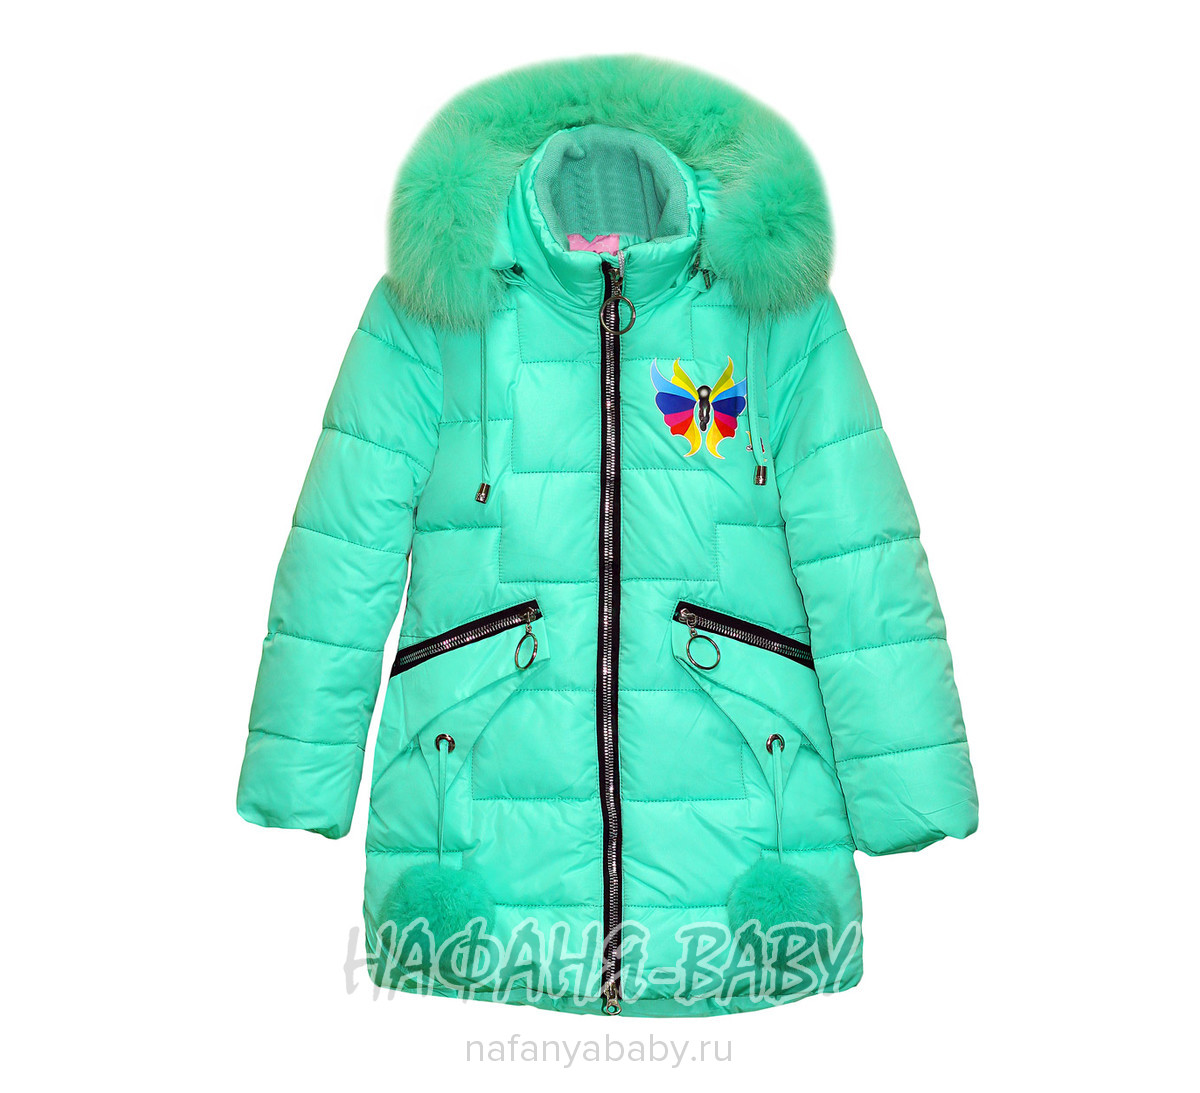 Зимняя удлиненная куртка для девочки YFNY арт: 807, 5-9 лет, 1-4 года, оптом Китай (Пекин)